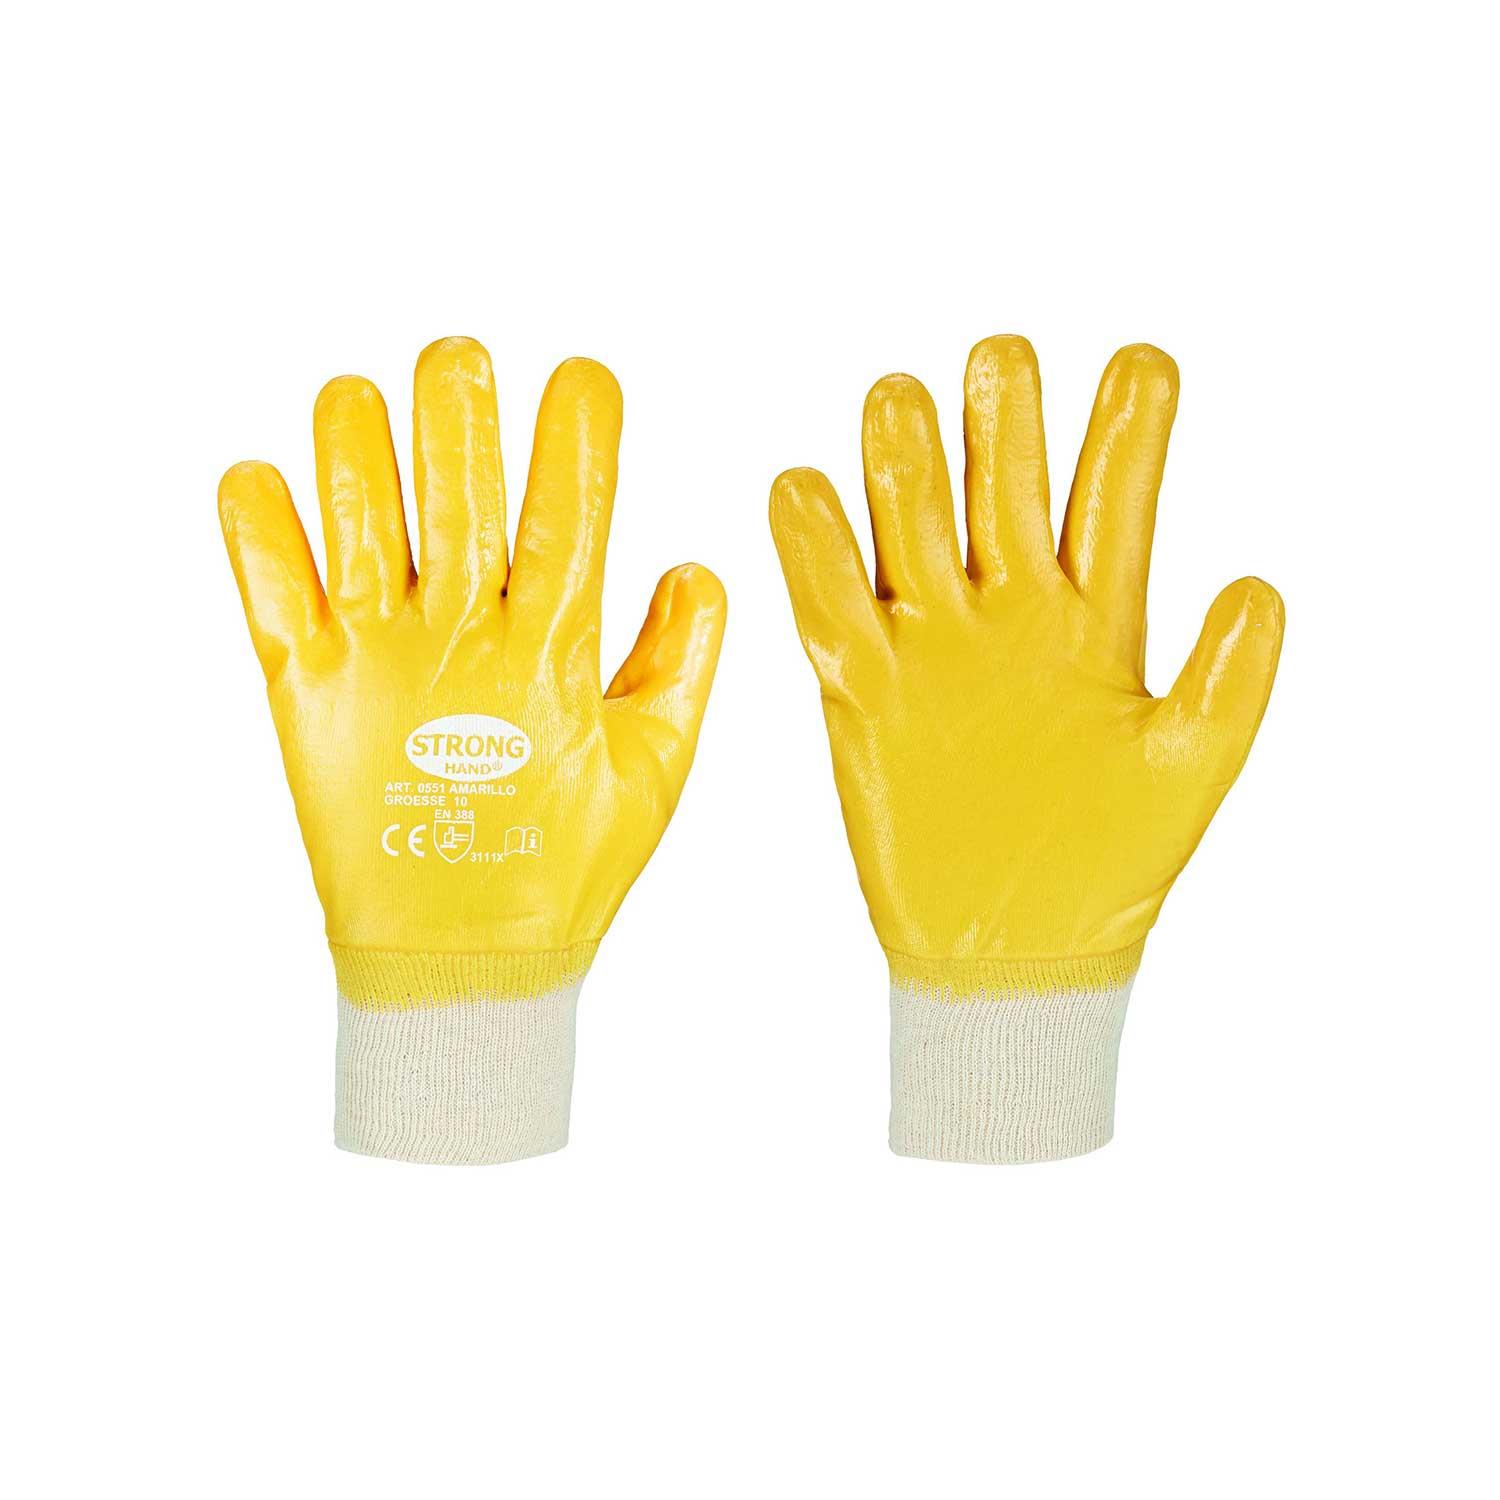 Amarillo Stronghand Handschuh, Nitril gelb, vollbeschichtet